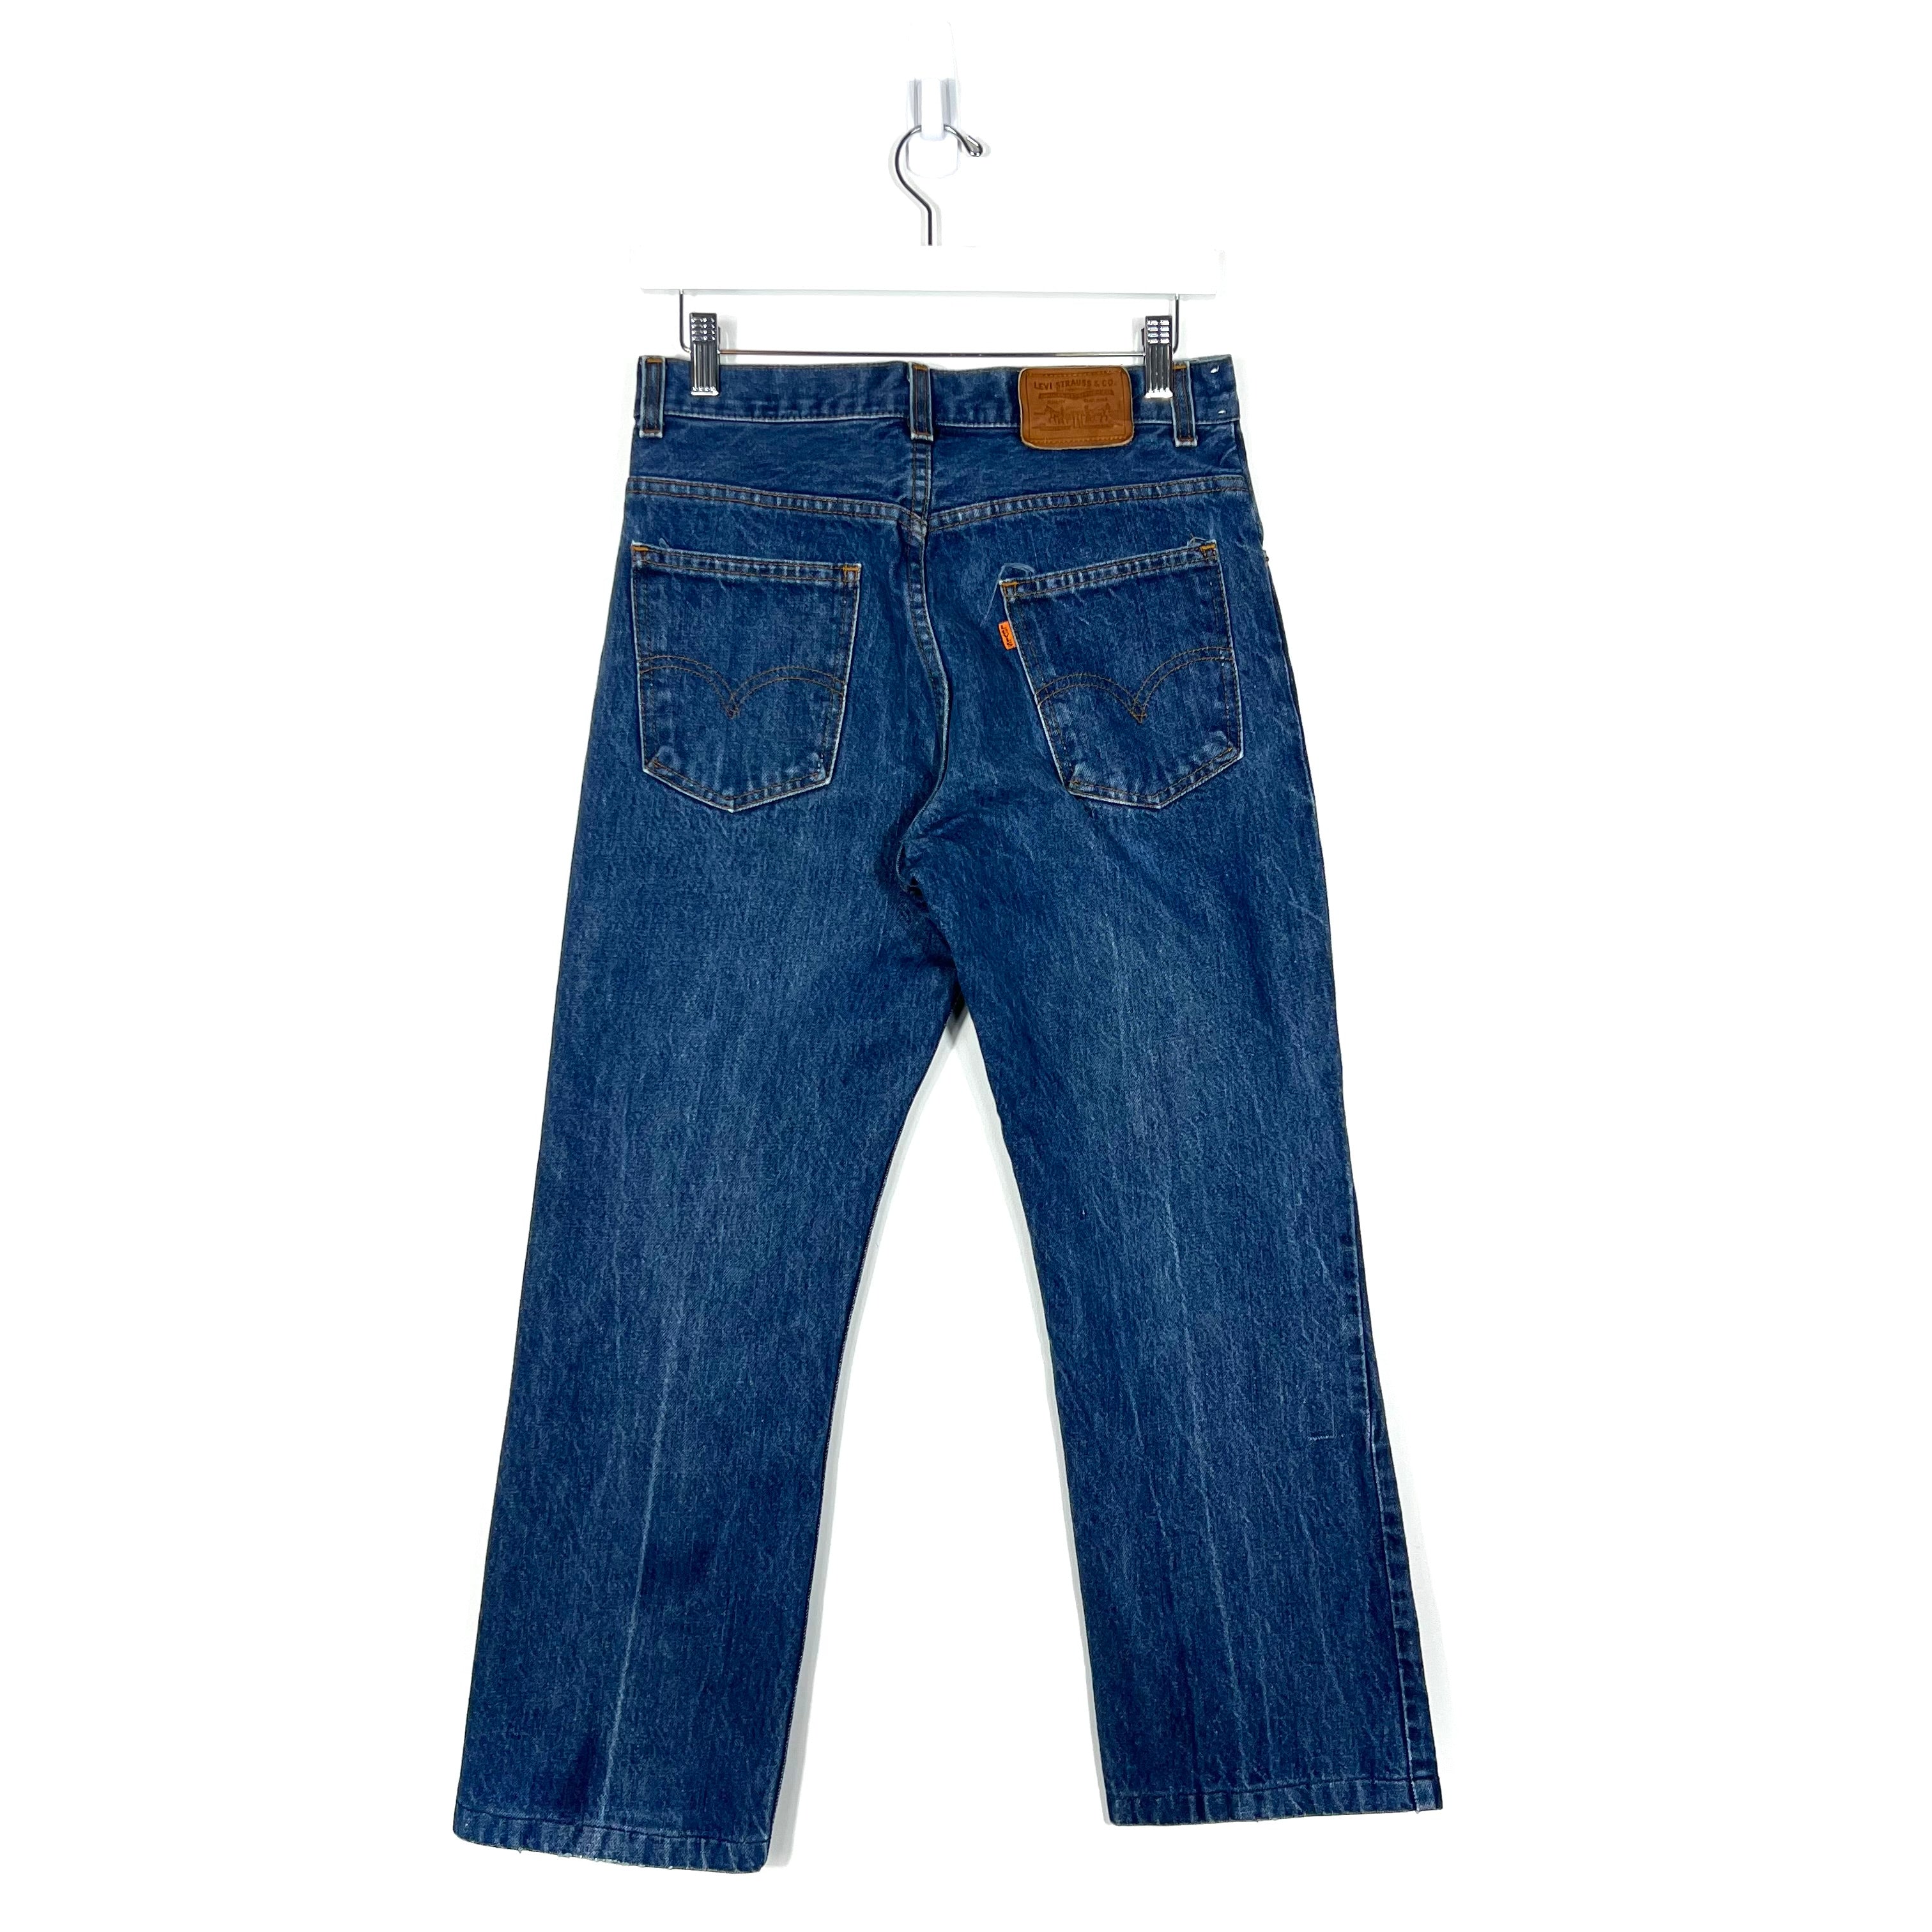 Vintage Levis Jeans - Women's 30/36